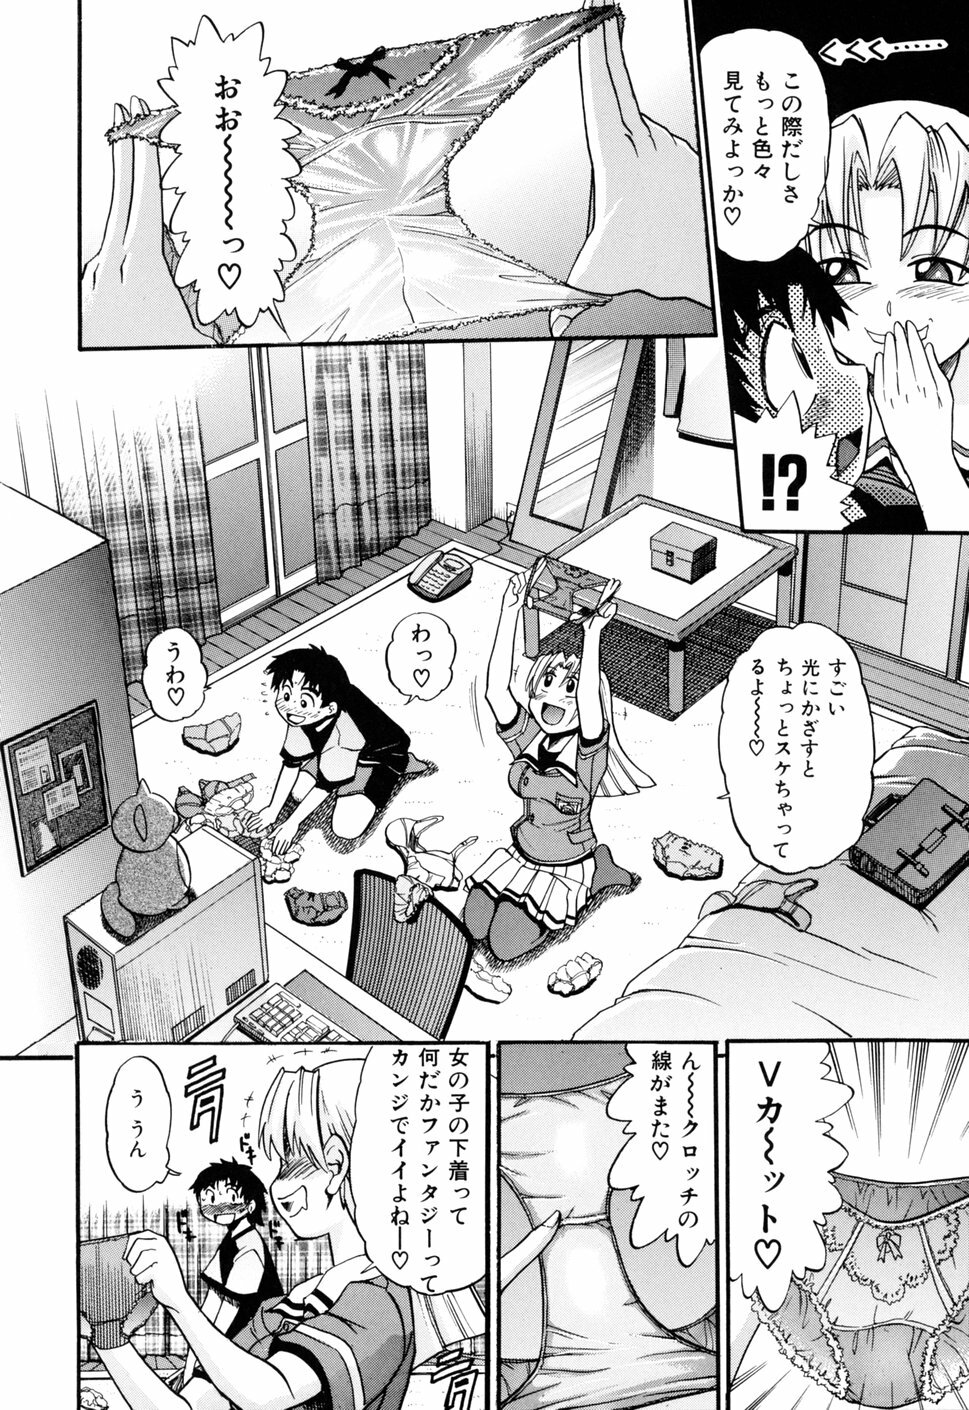 [DISTANCE] Ochiru Tenshi Vol. 1 page 16 full